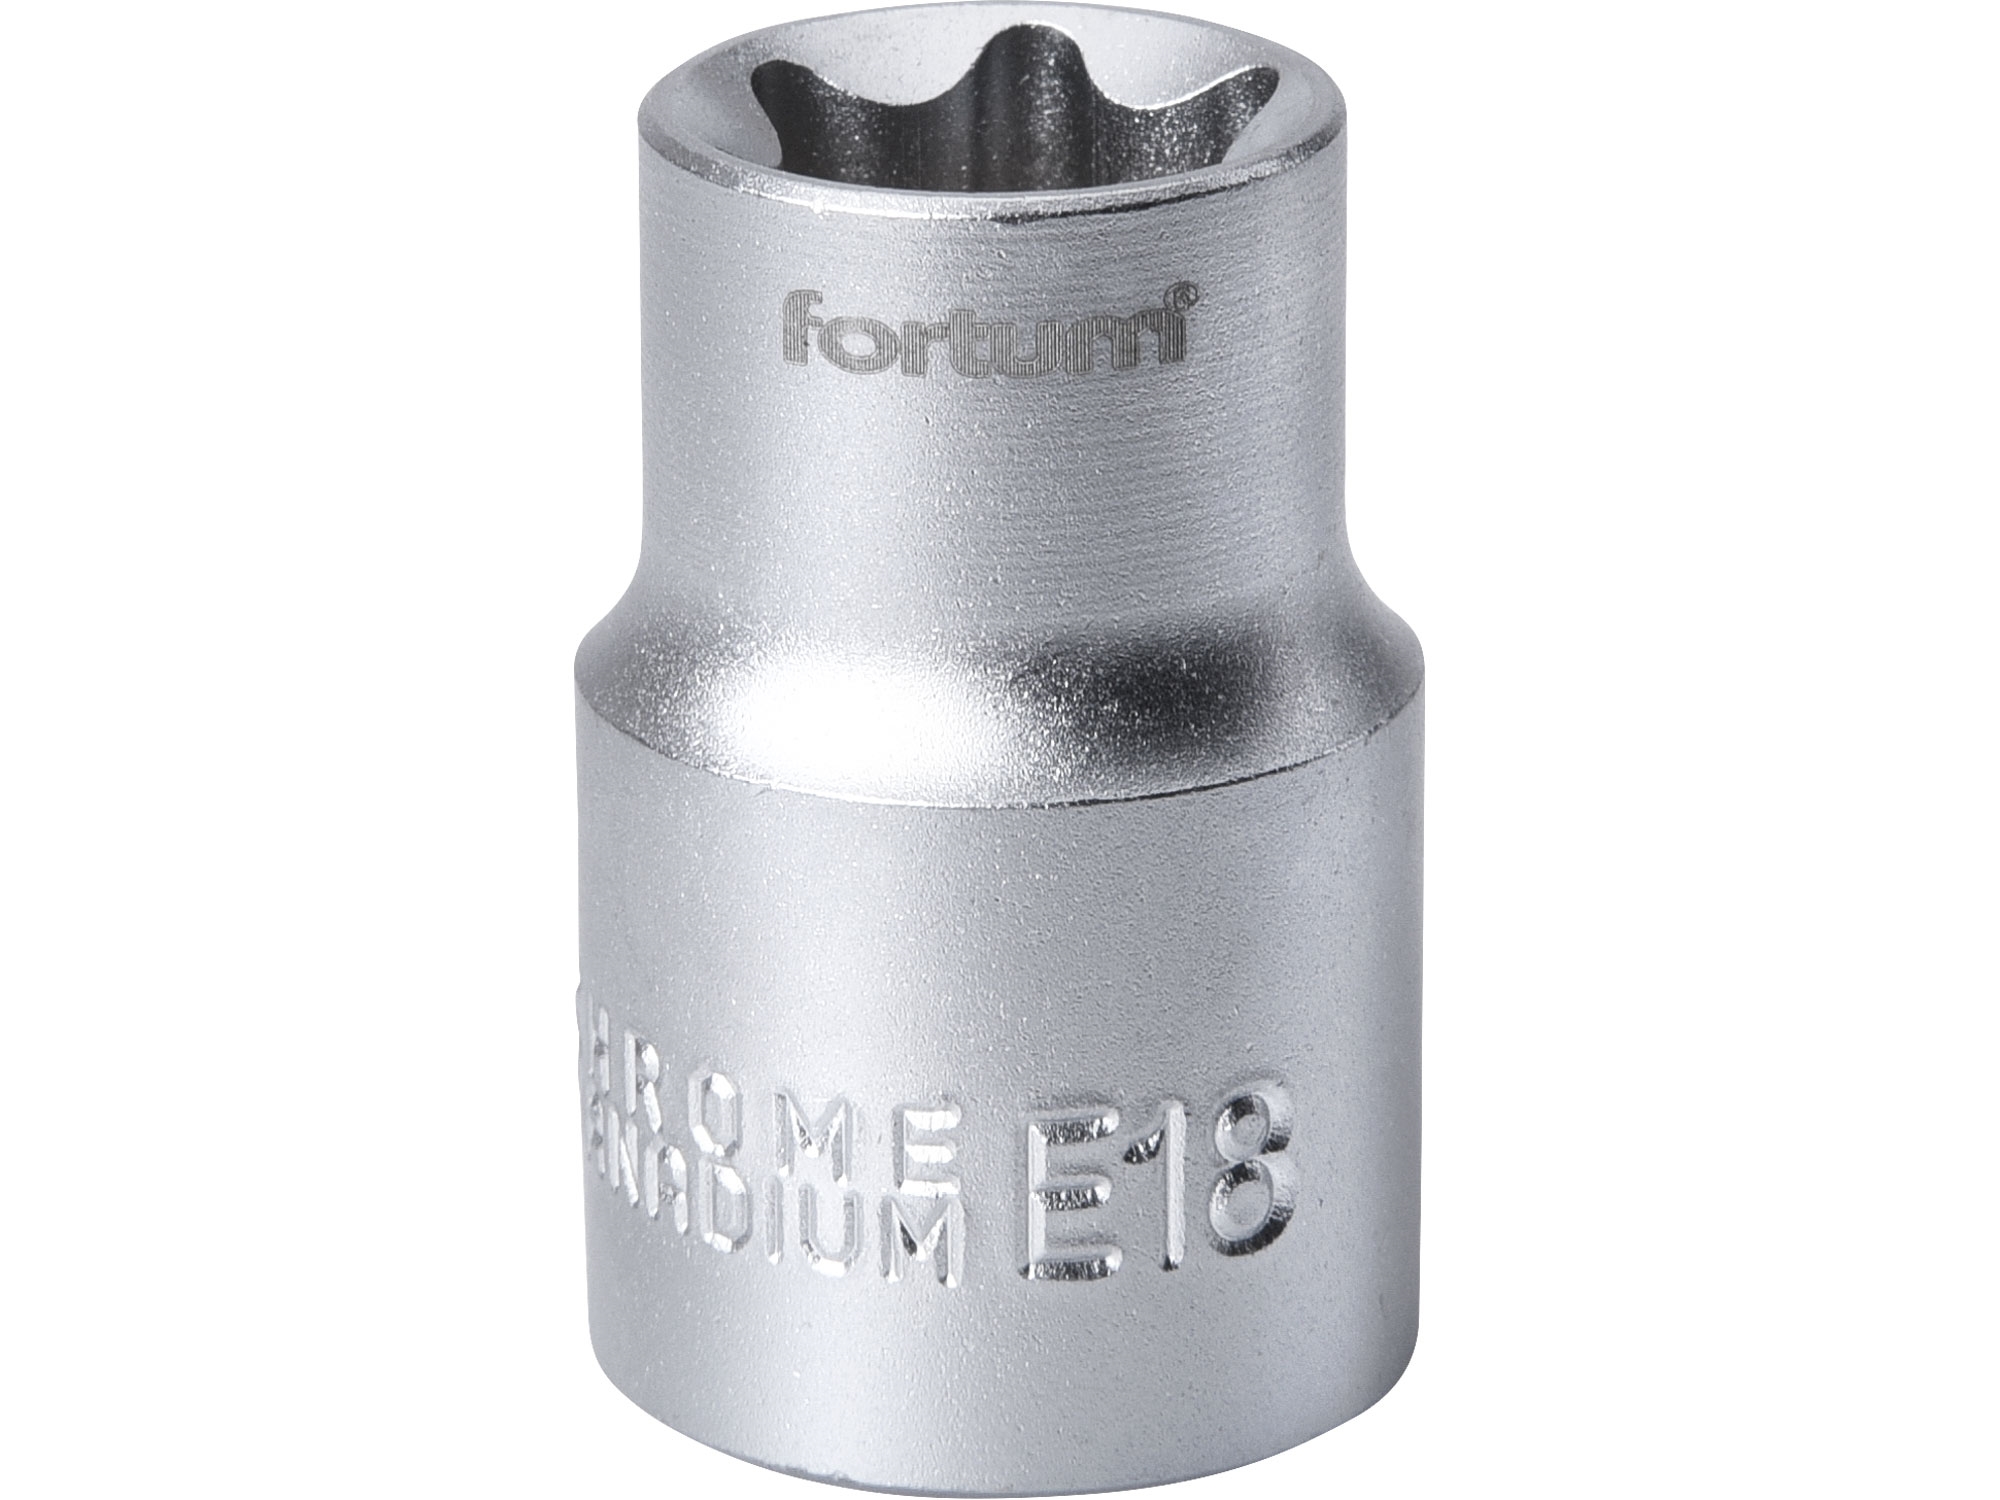 hlavice nástrčná vnitřní TORX, 1/2", E 18, L 38mm, FORTUM 4700703